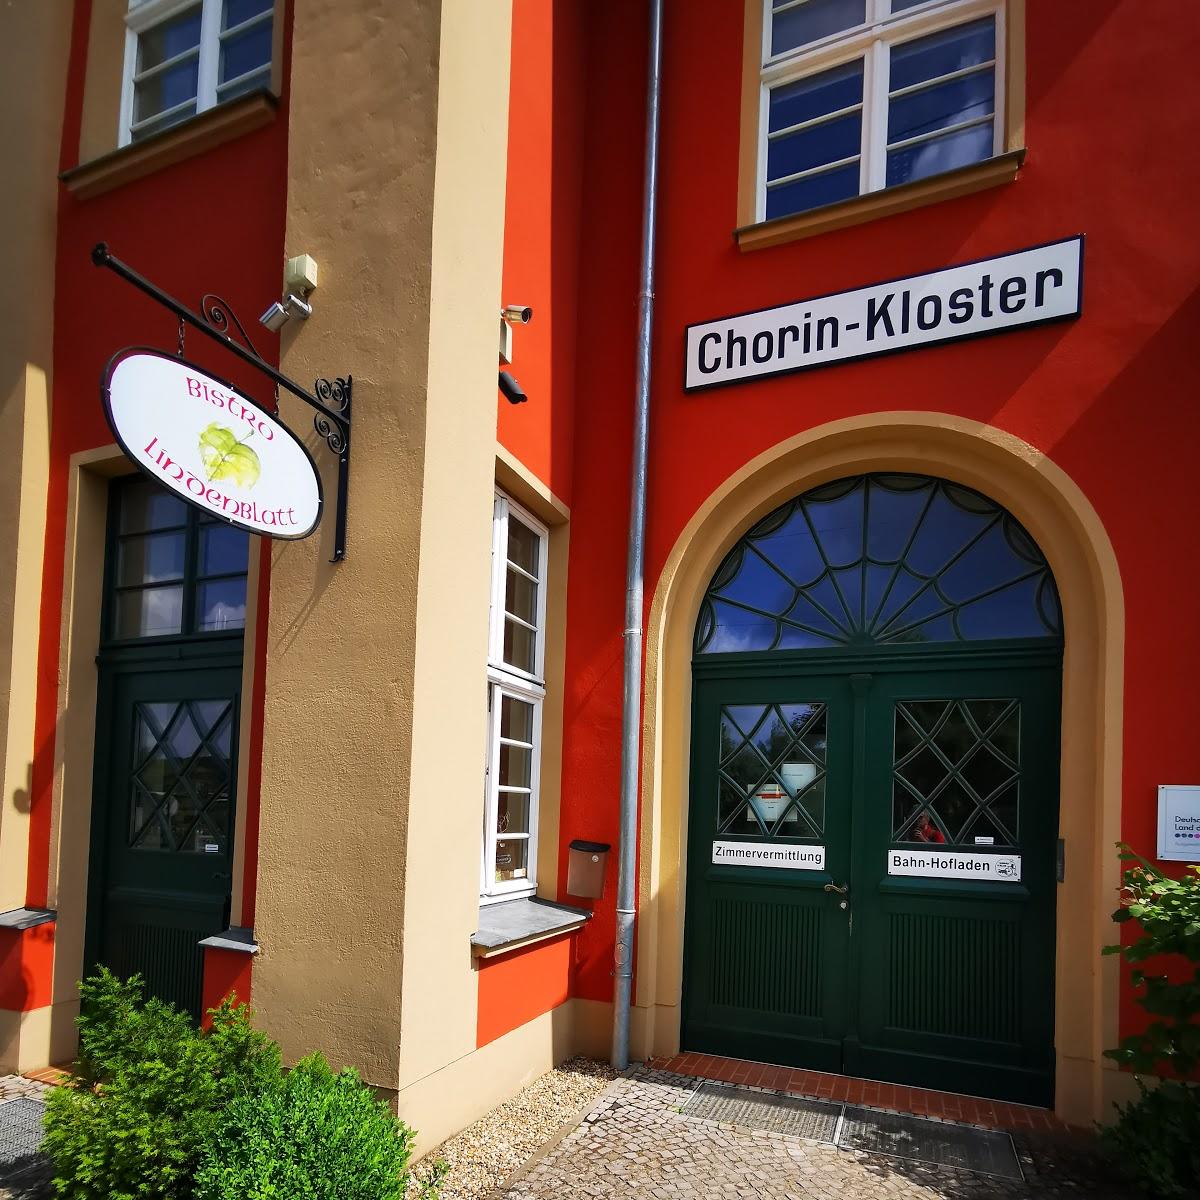 Restaurant "Bistro Lindenblatt - Bahn-Hofladen im Historischen Bahnhof" in Chorin